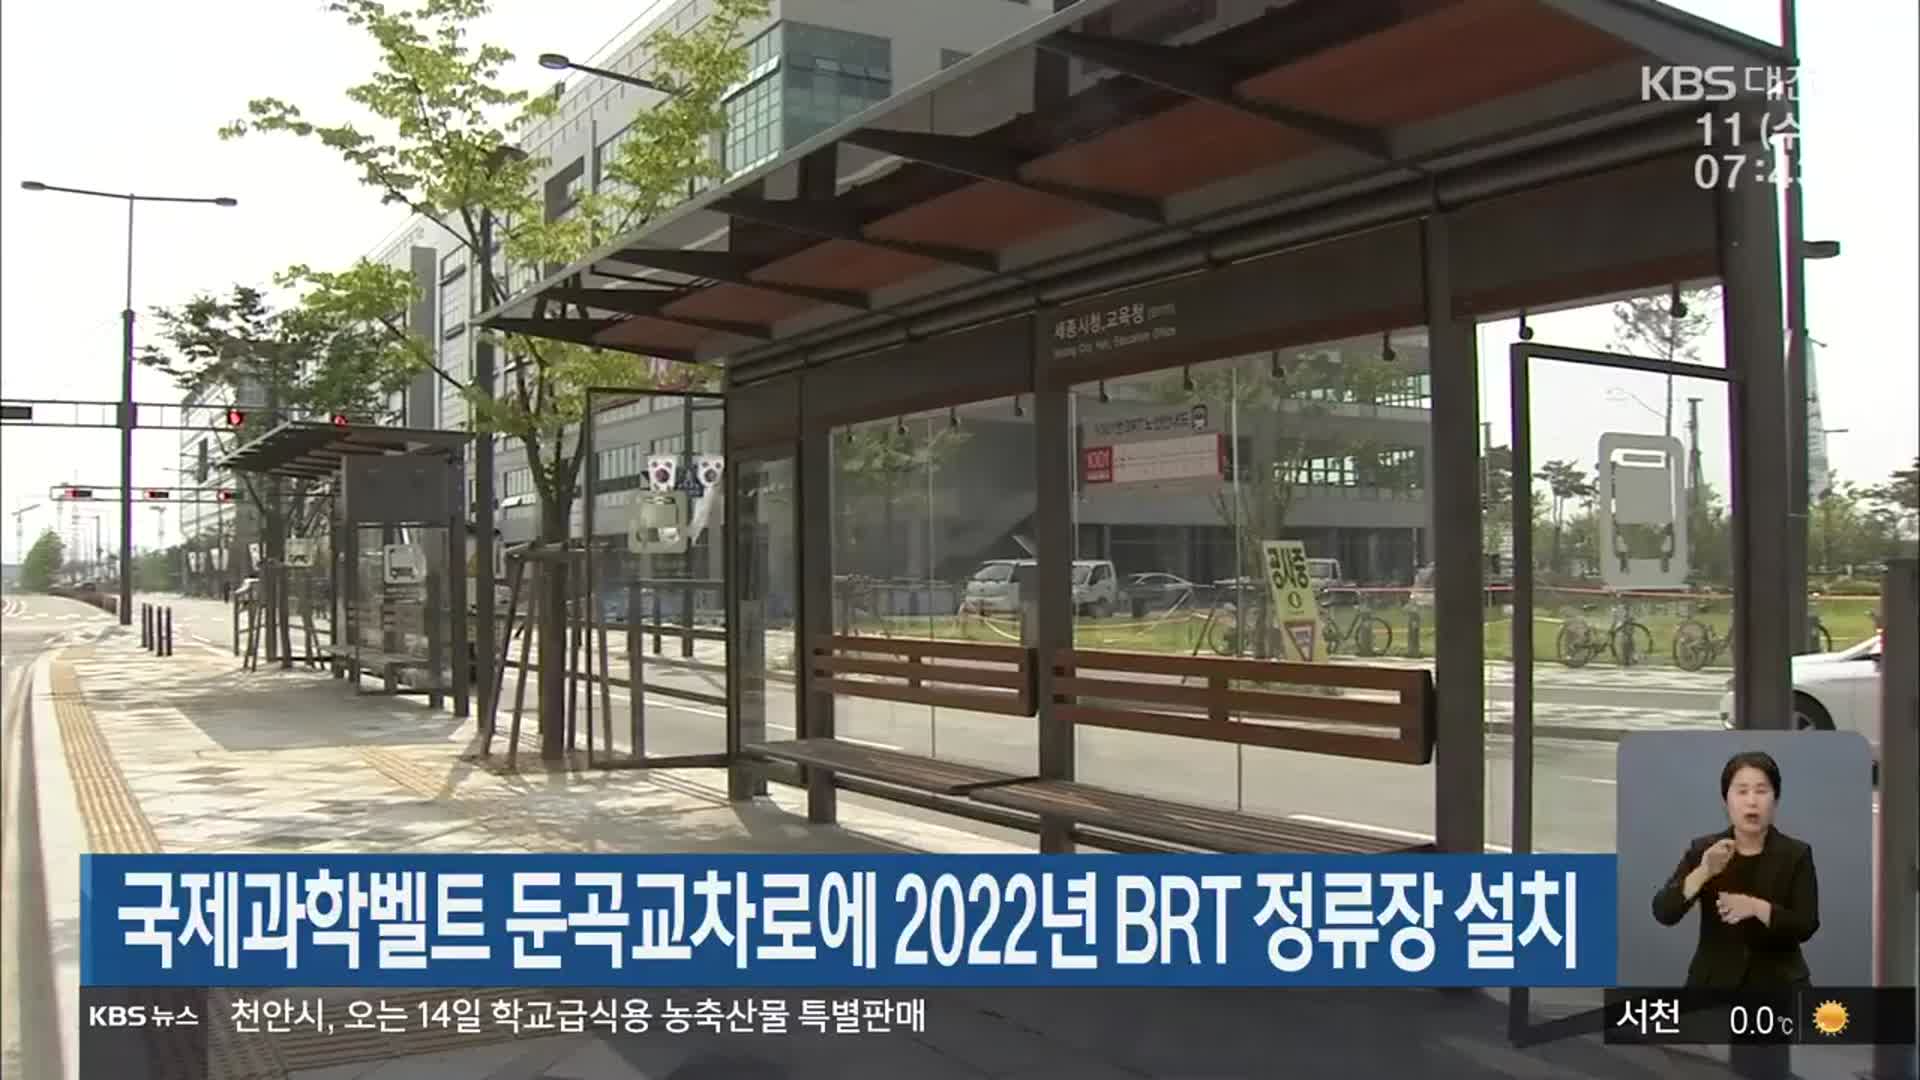 국제과학벨트 둔곡교차로에 2022년 BRT 정류장 설치